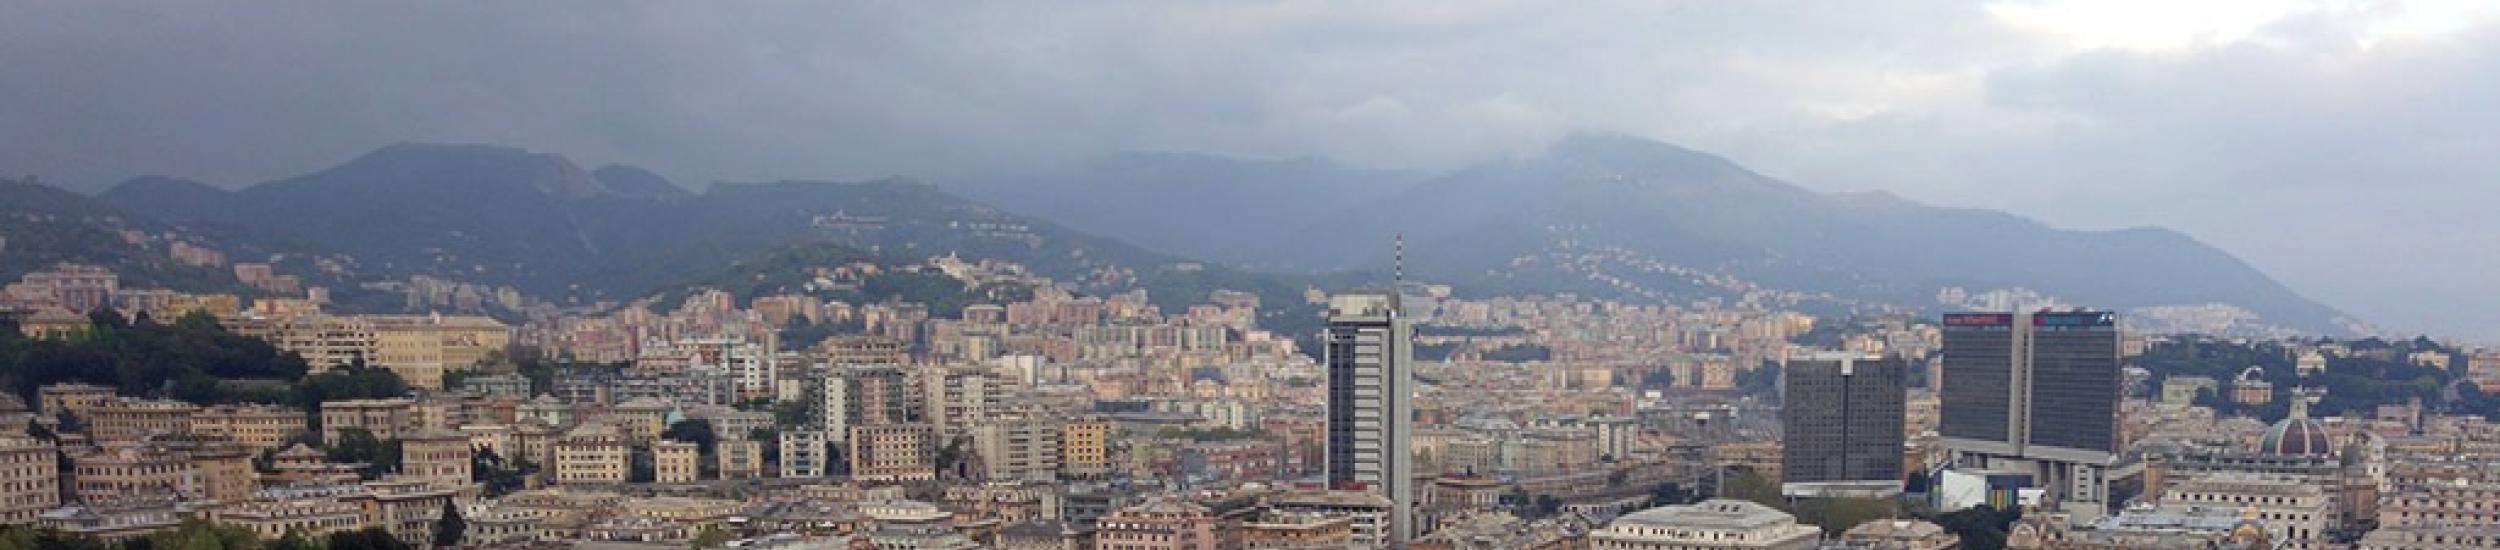 Aria, inquinanti sotto controllo nel weekend nella città metropolitana di genova (news del 2015-12-07 09:58:42)